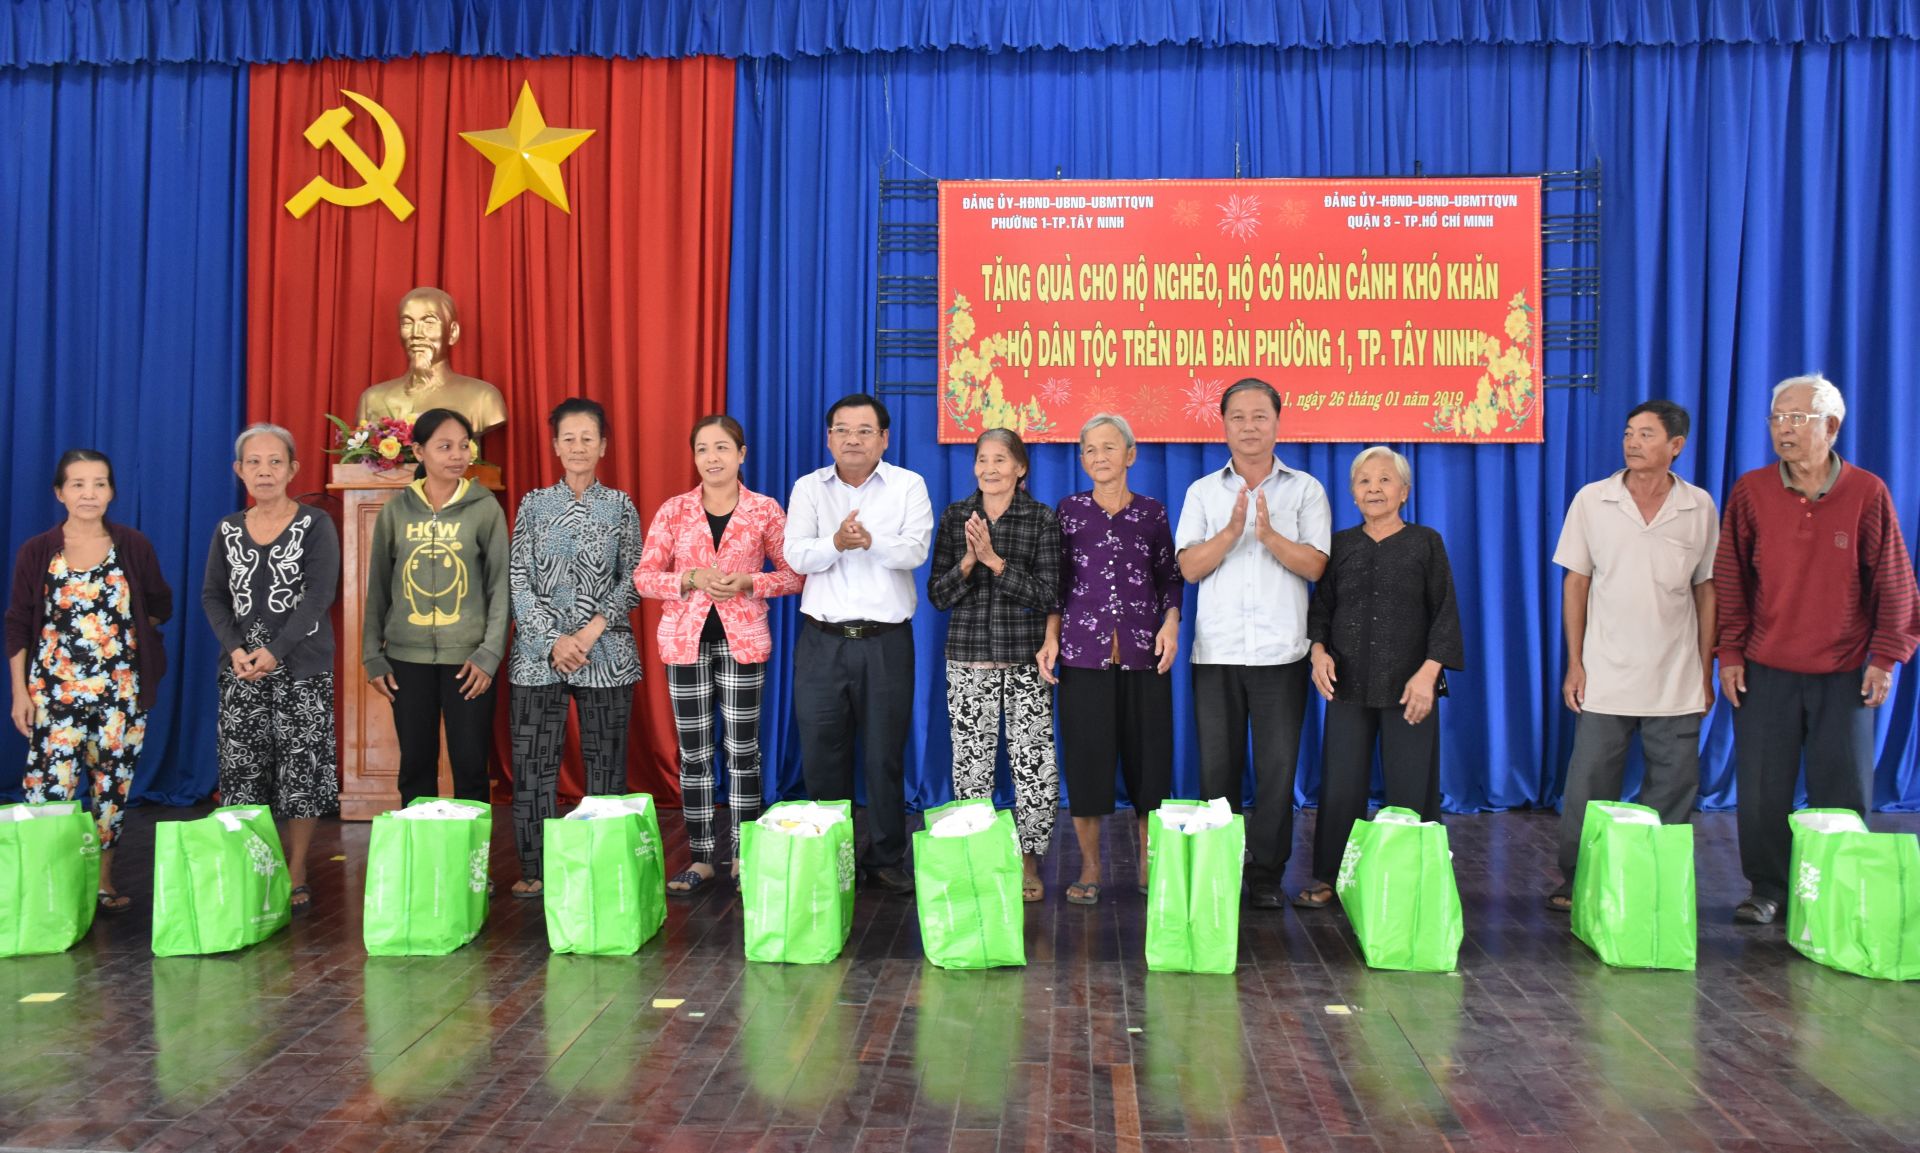 Điểm báo in Tây Ninh ngày 28.01.2019